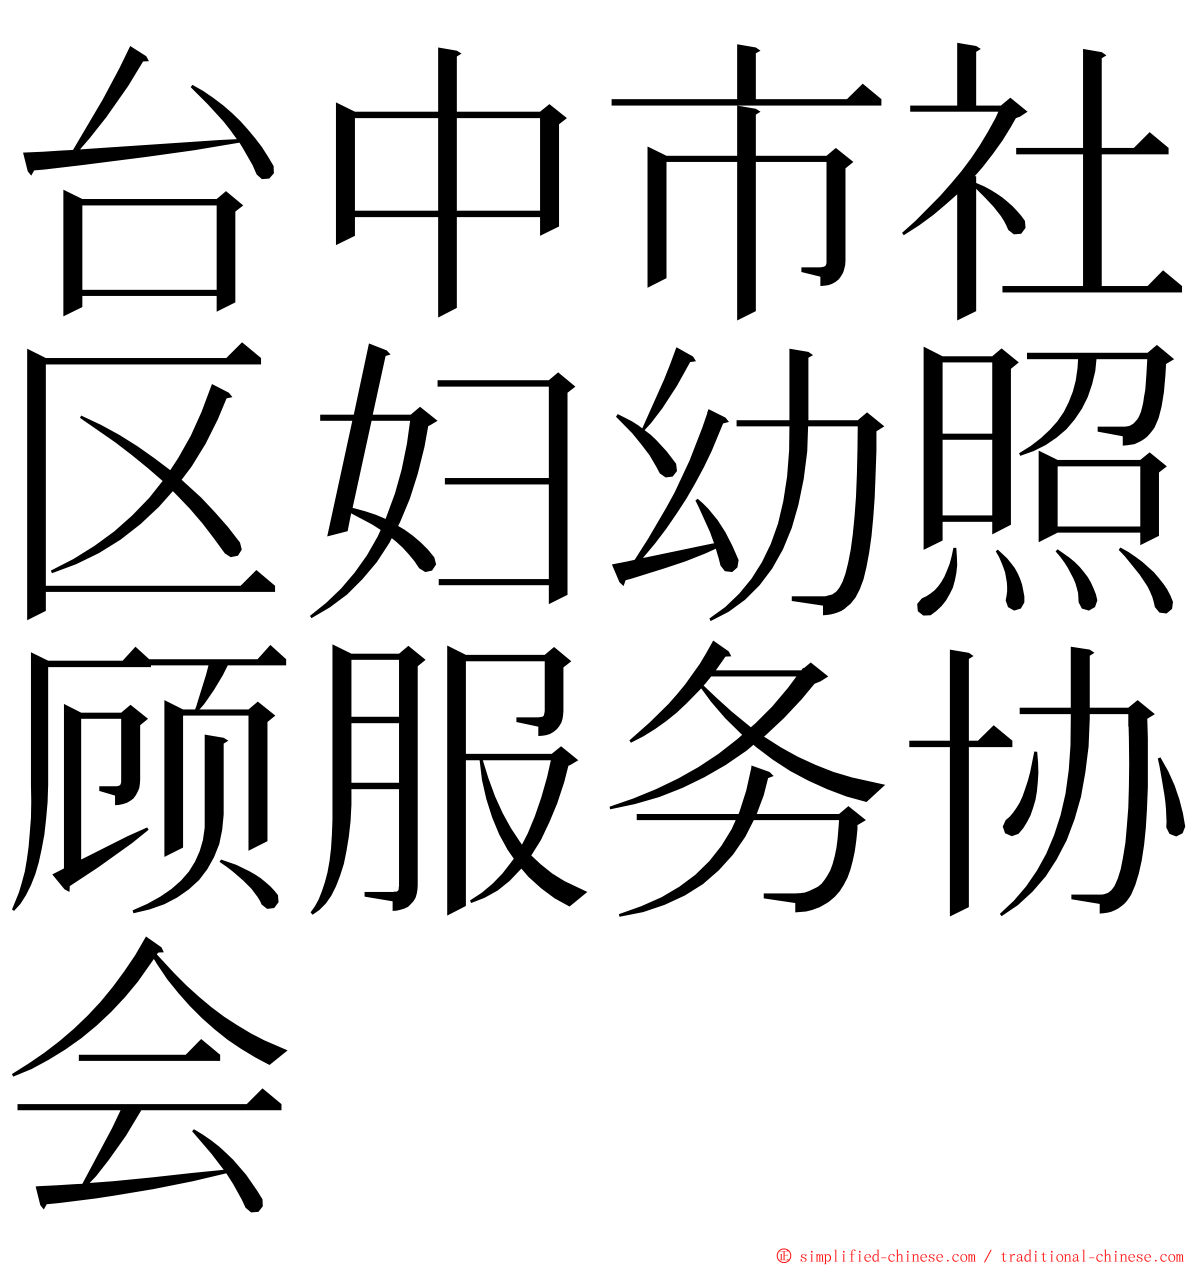 台中市社区妇幼照顾服务协会 ming font